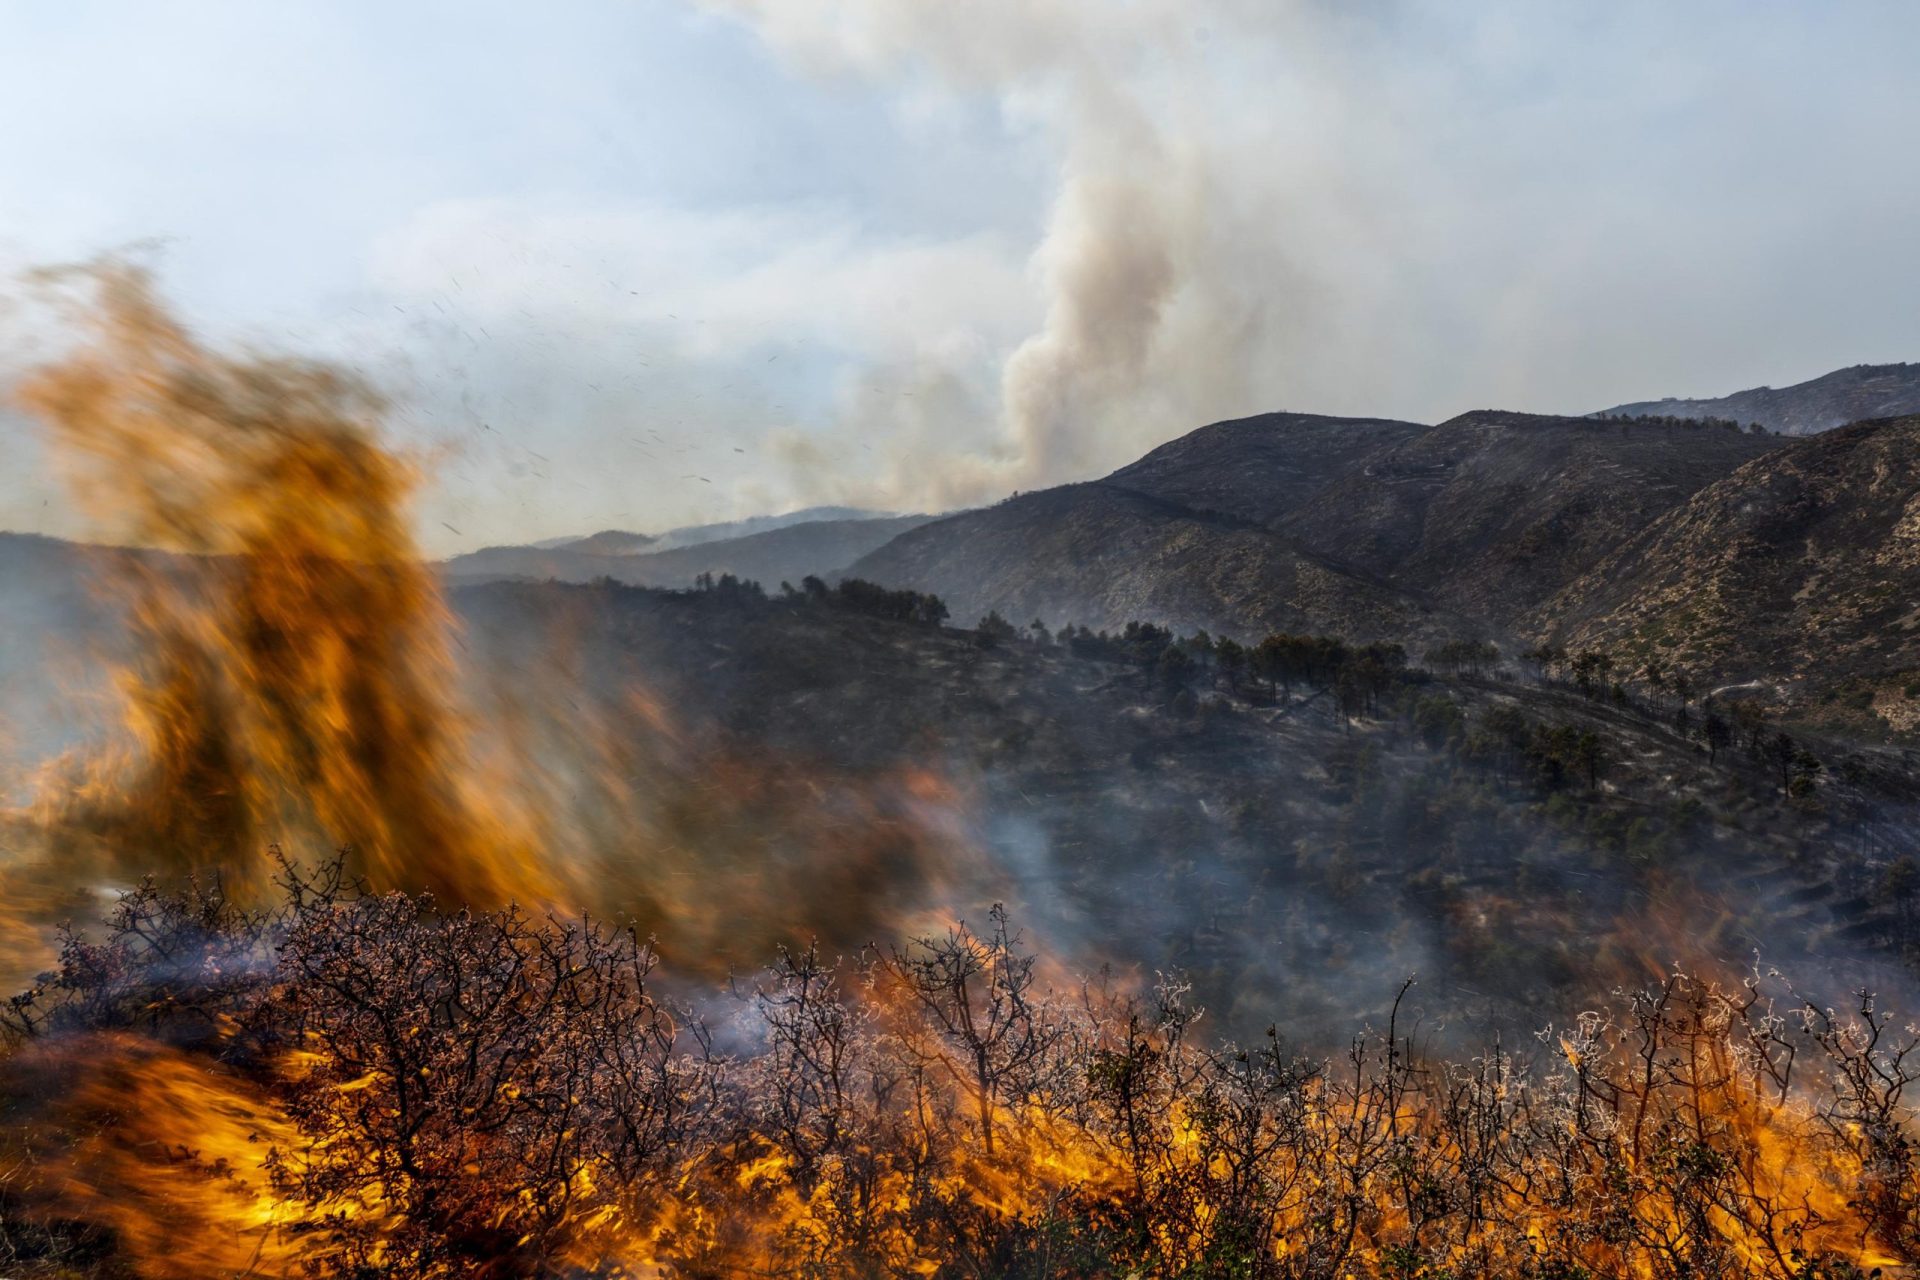 Los vientos provocan un gran incendio forestal en España; Portugal entra en alerta